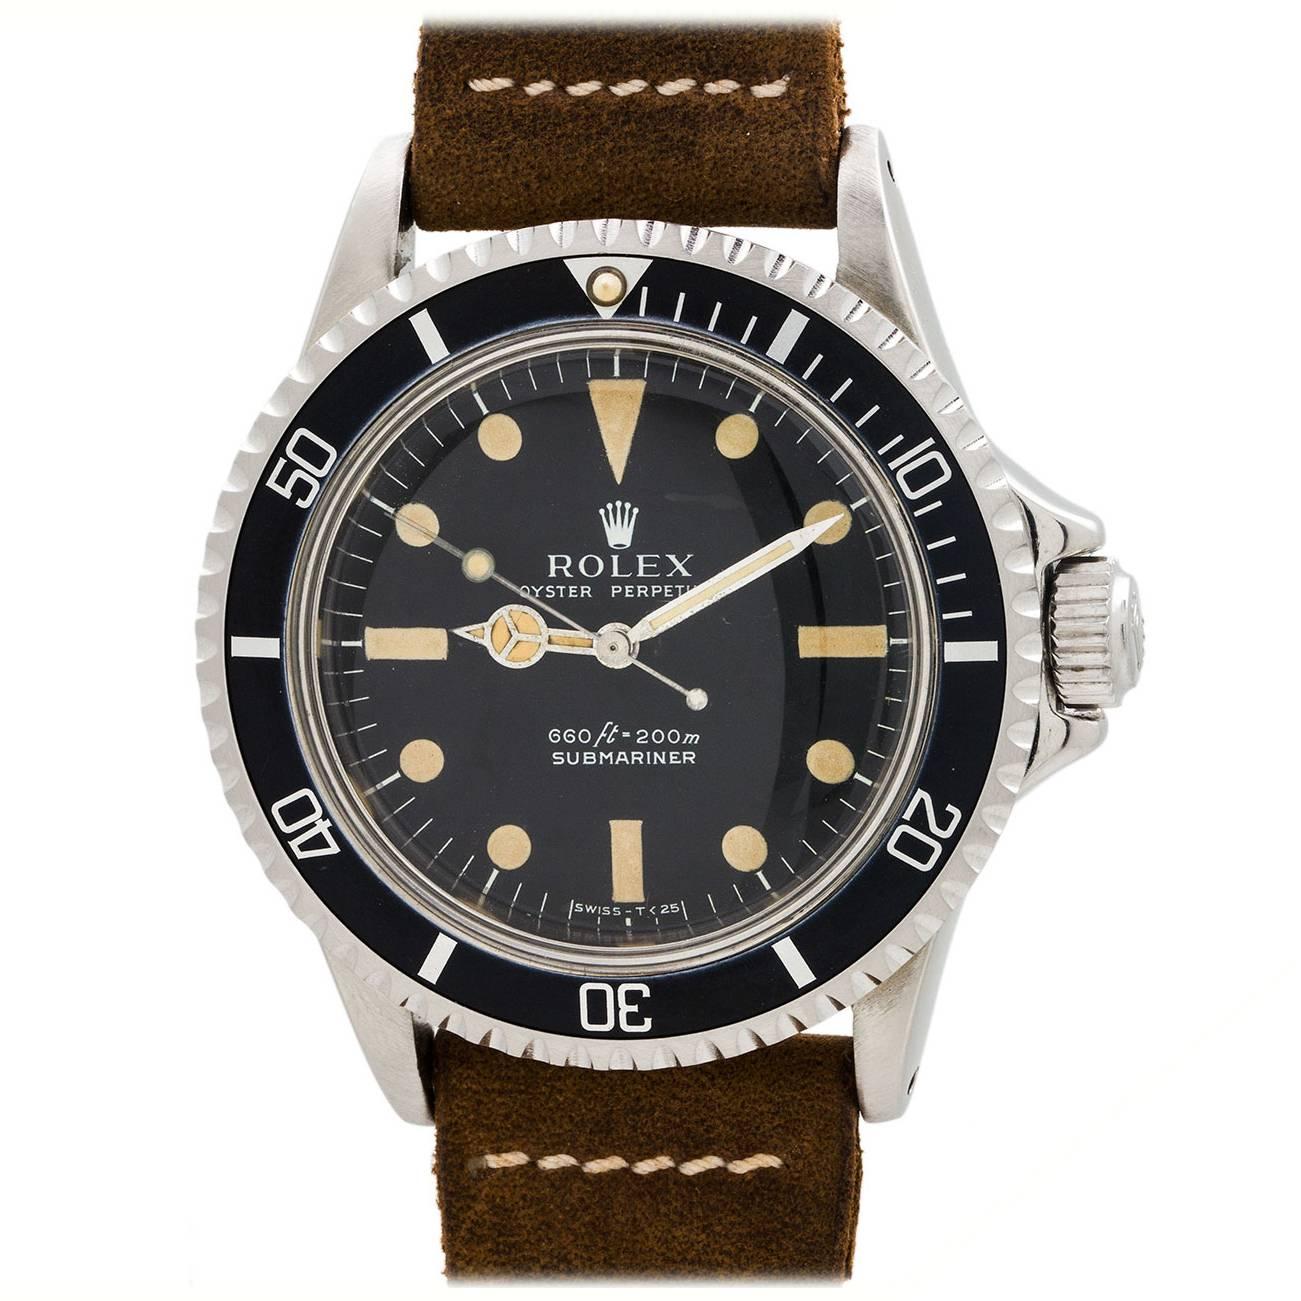 Rolex Stainless Steel Submariner Wristwatch Ref 5513 circa 1974